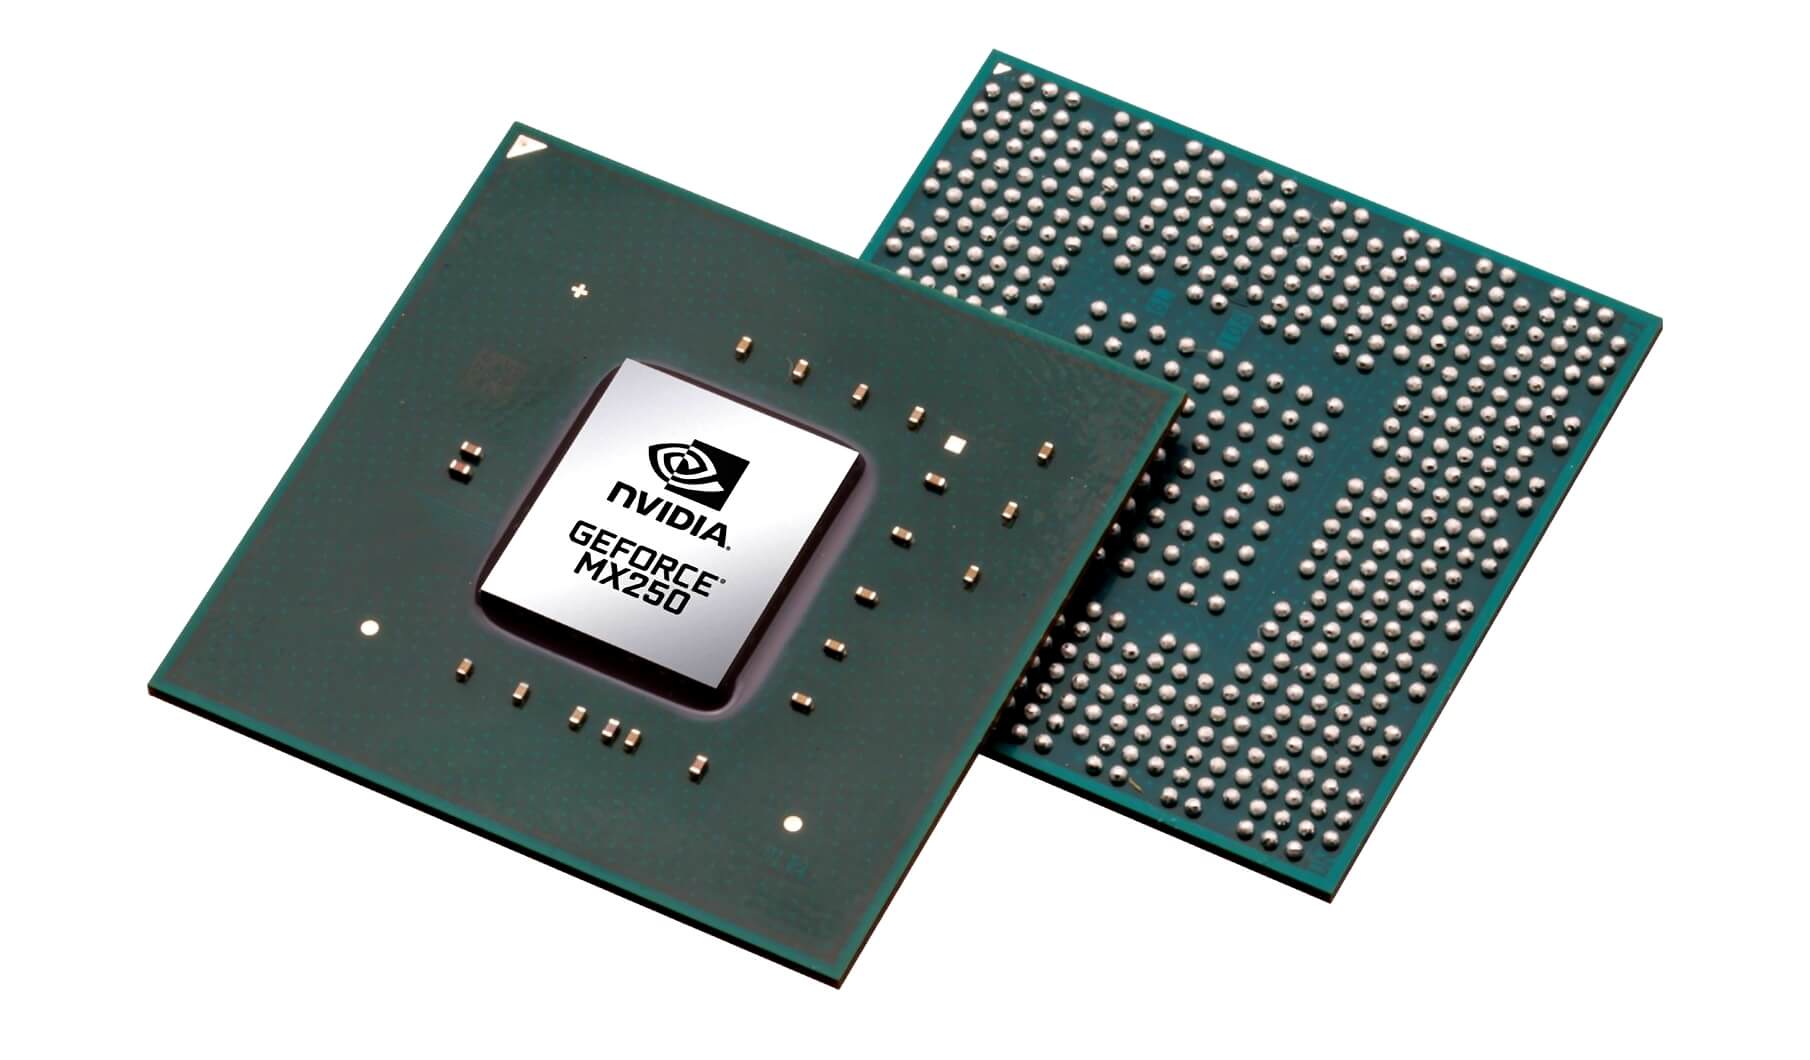 GeForce MX250